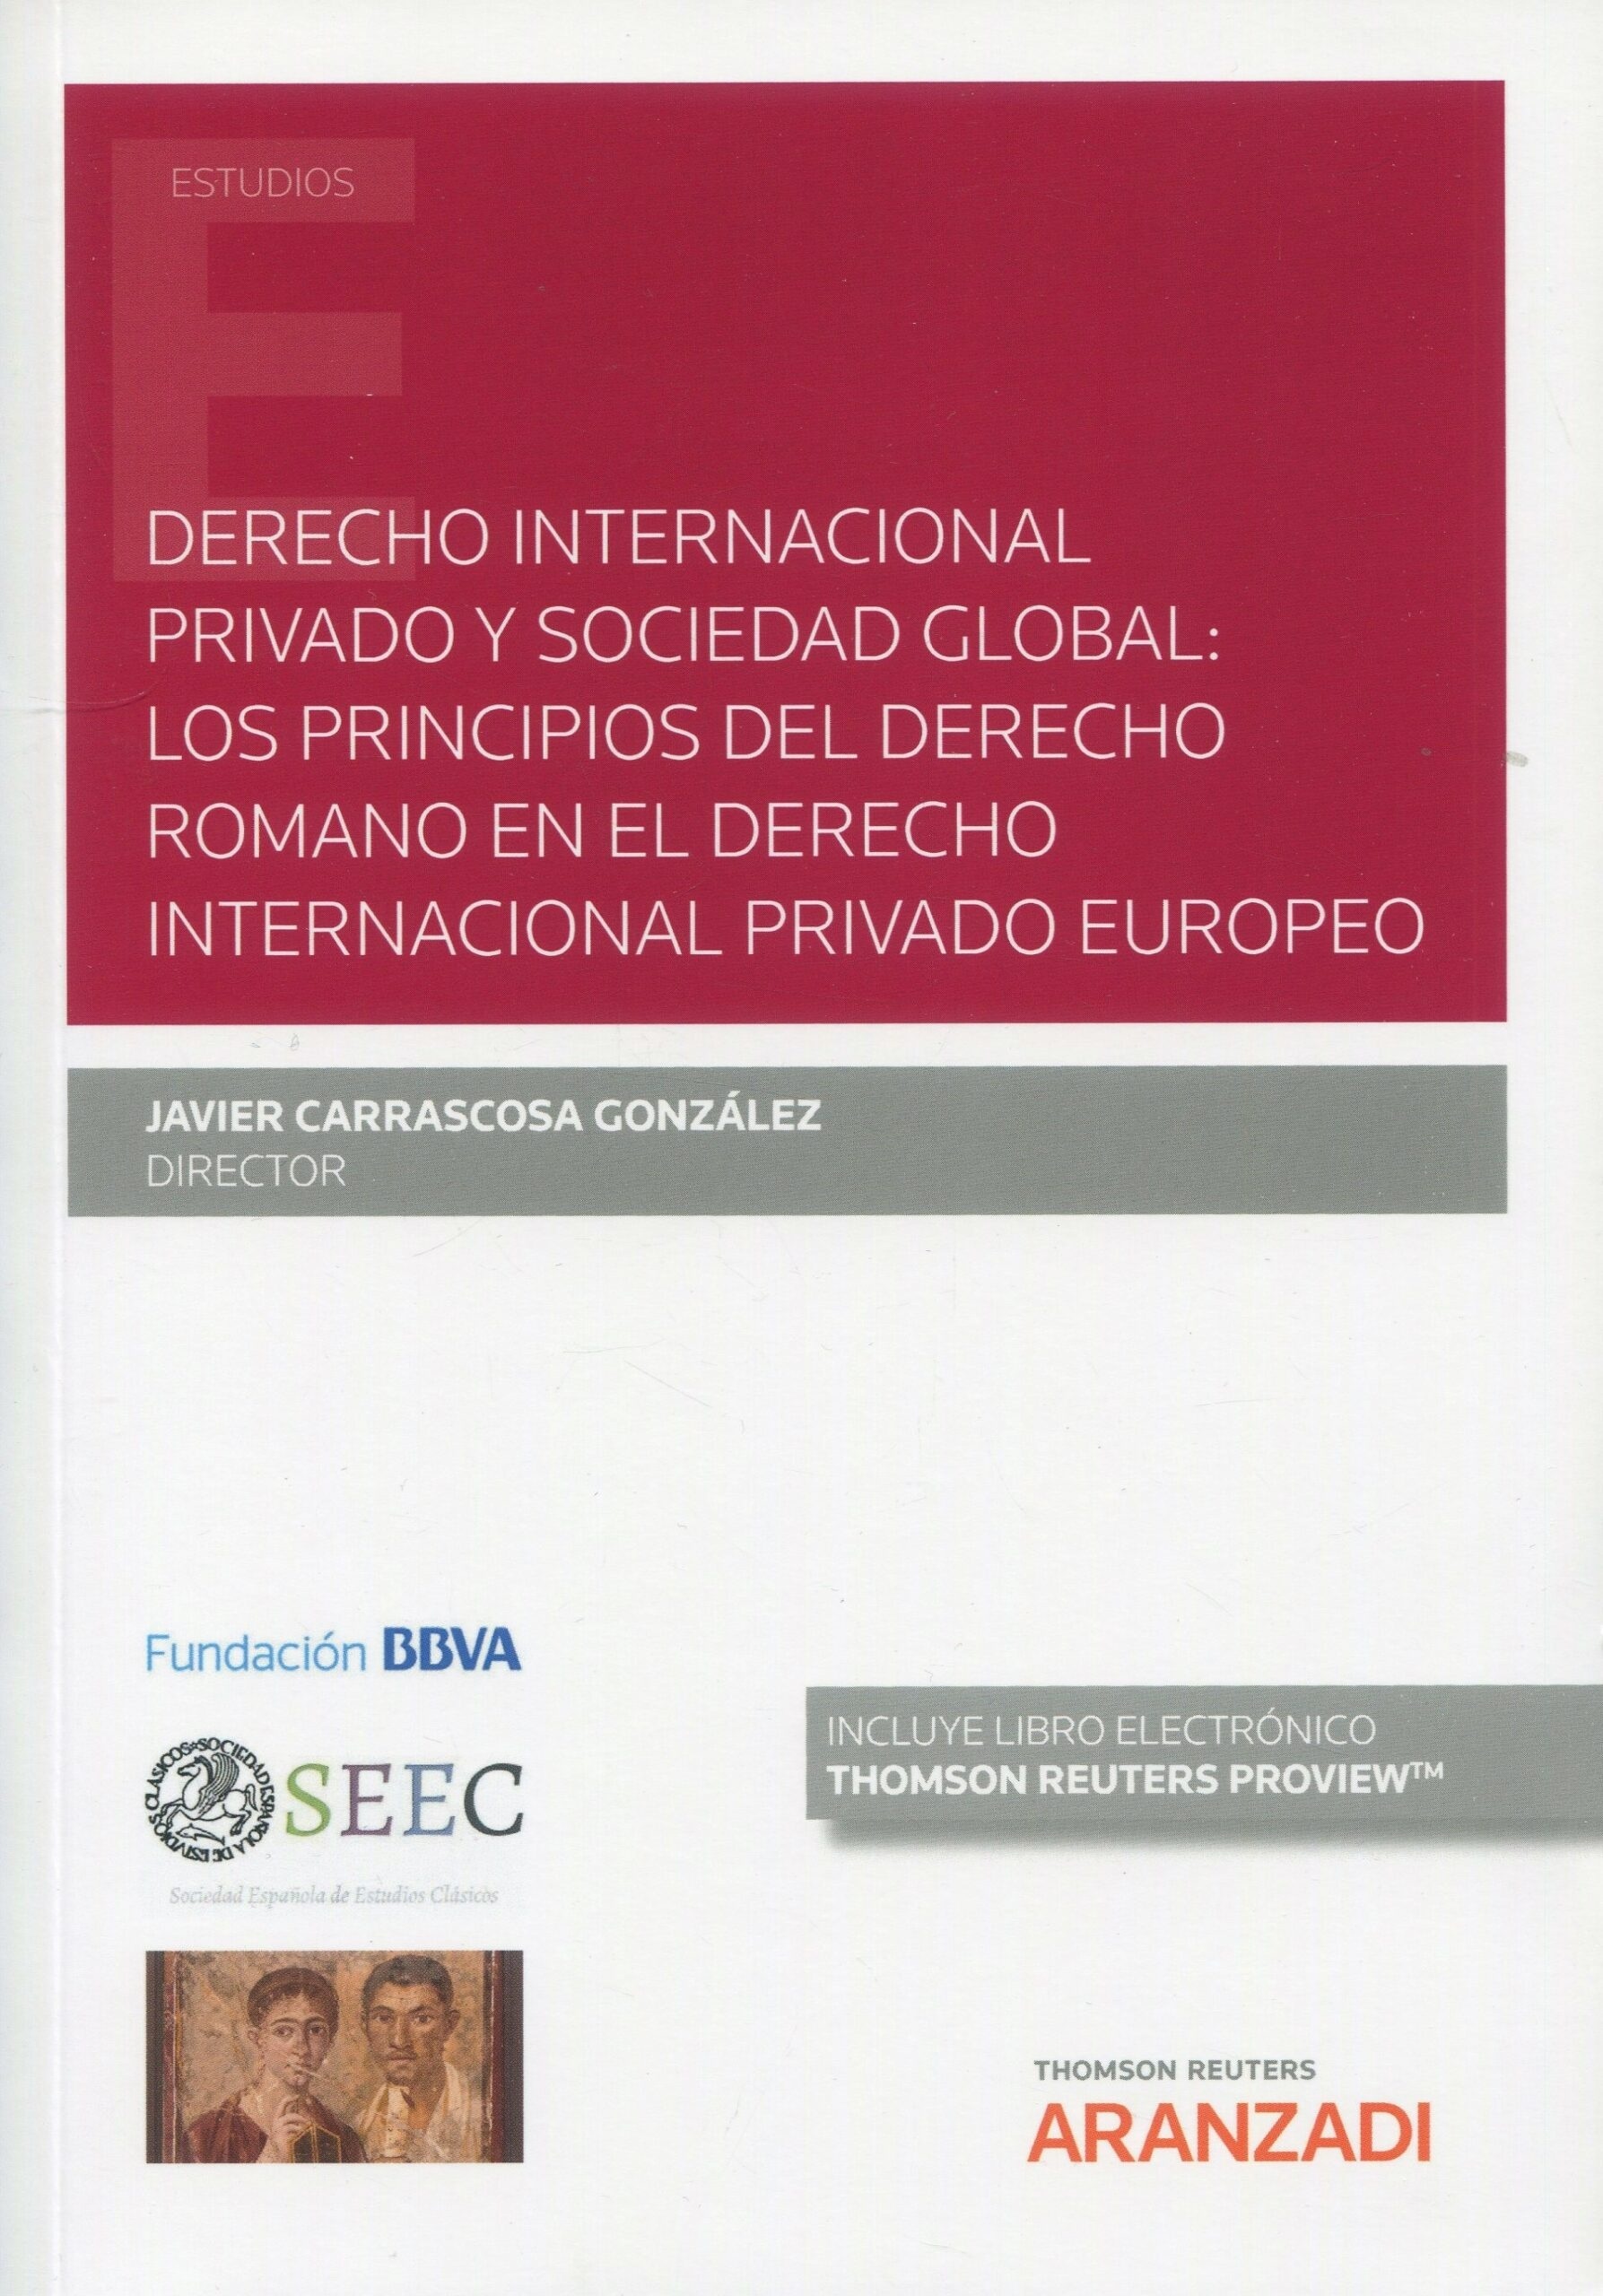 Derecho internacional privado y sociedad global: "los principios del derecho romano en el derecho internacional privado (DÚO)"